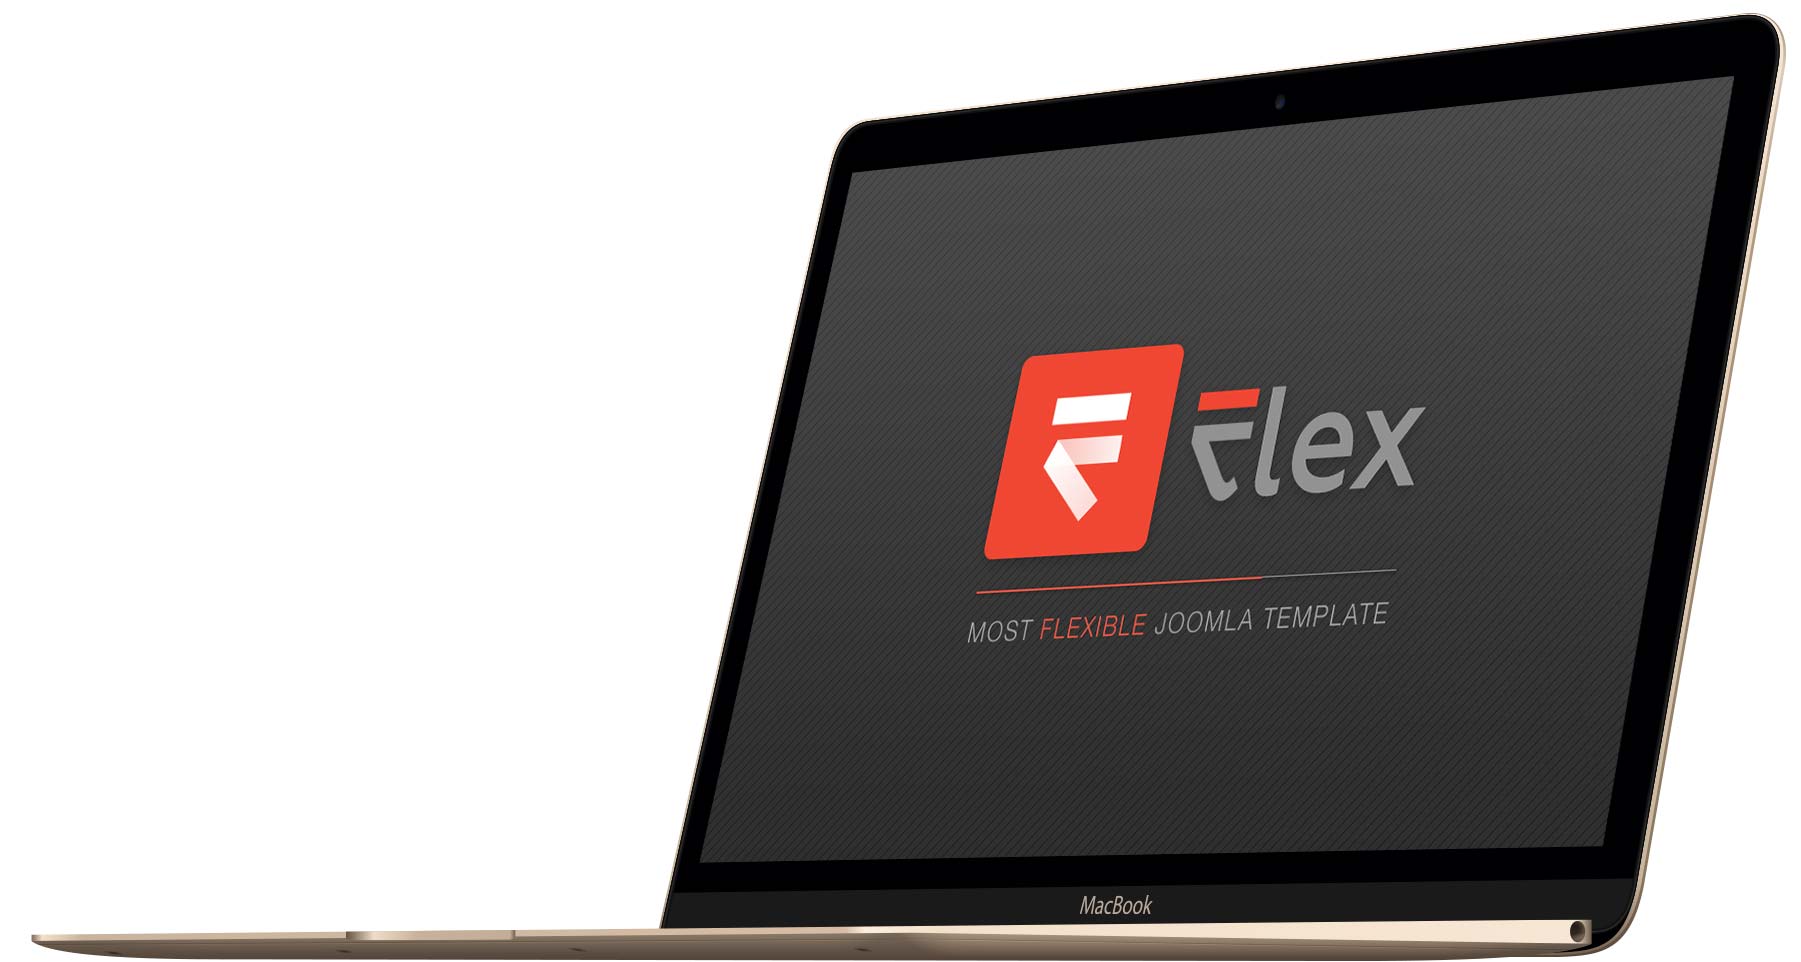 flex-mac-right-x.jpg - 81,07 kB